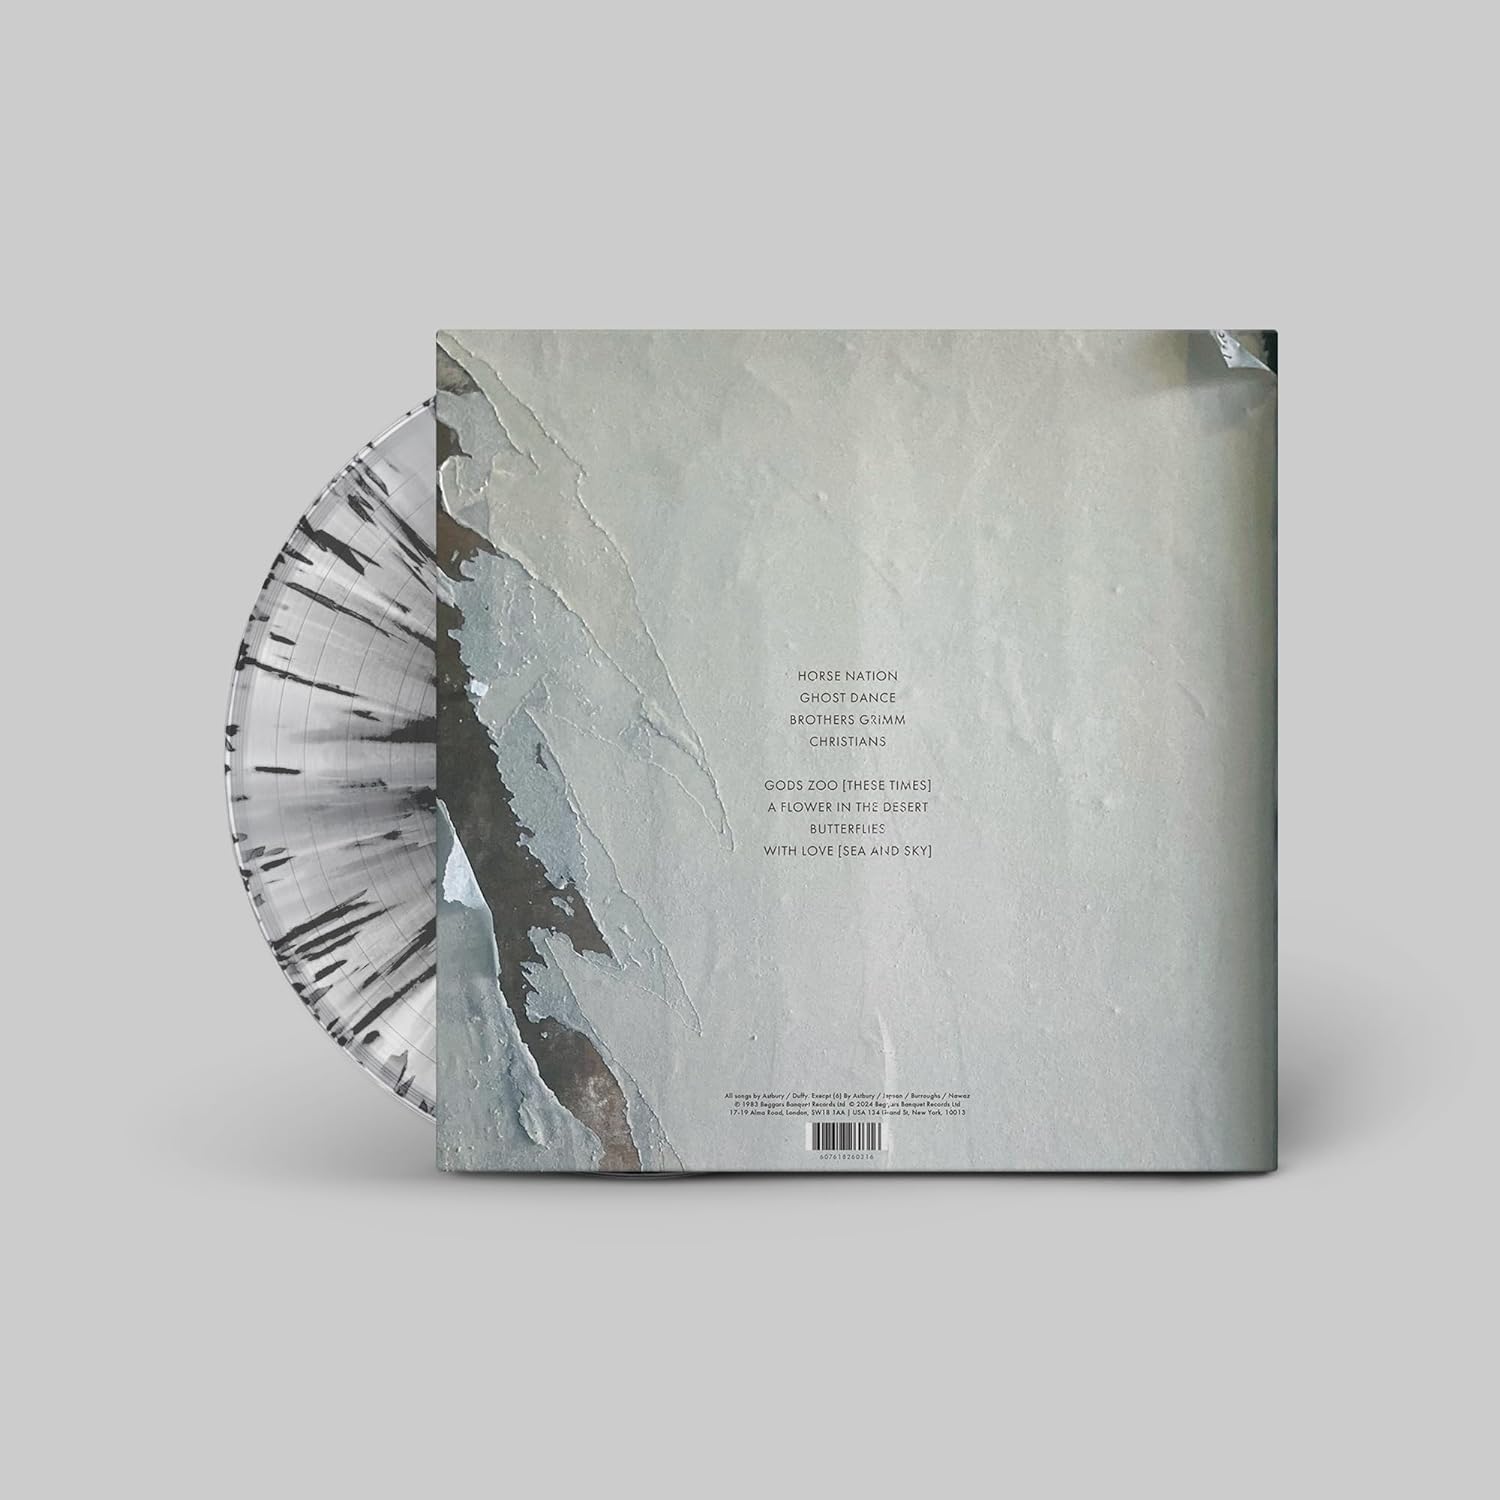 DEATH CULT – PARADISE NOW splattered clear vinyl LP